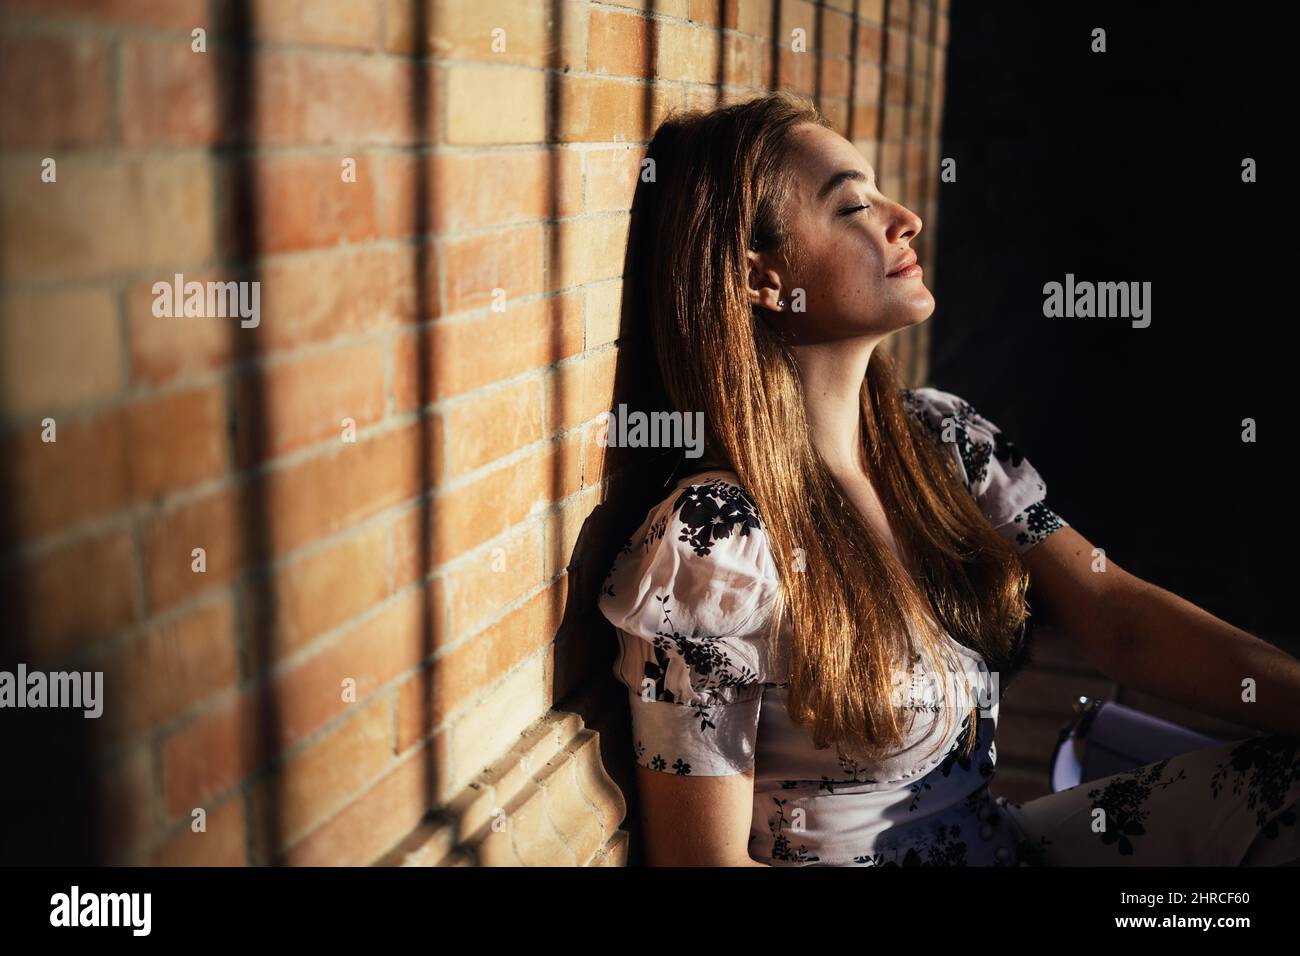 Primo piano di donna caucasica seduta a terra godendo la sensazione del calore del sole sul suo volto che entra dall'esterno Foto Stock